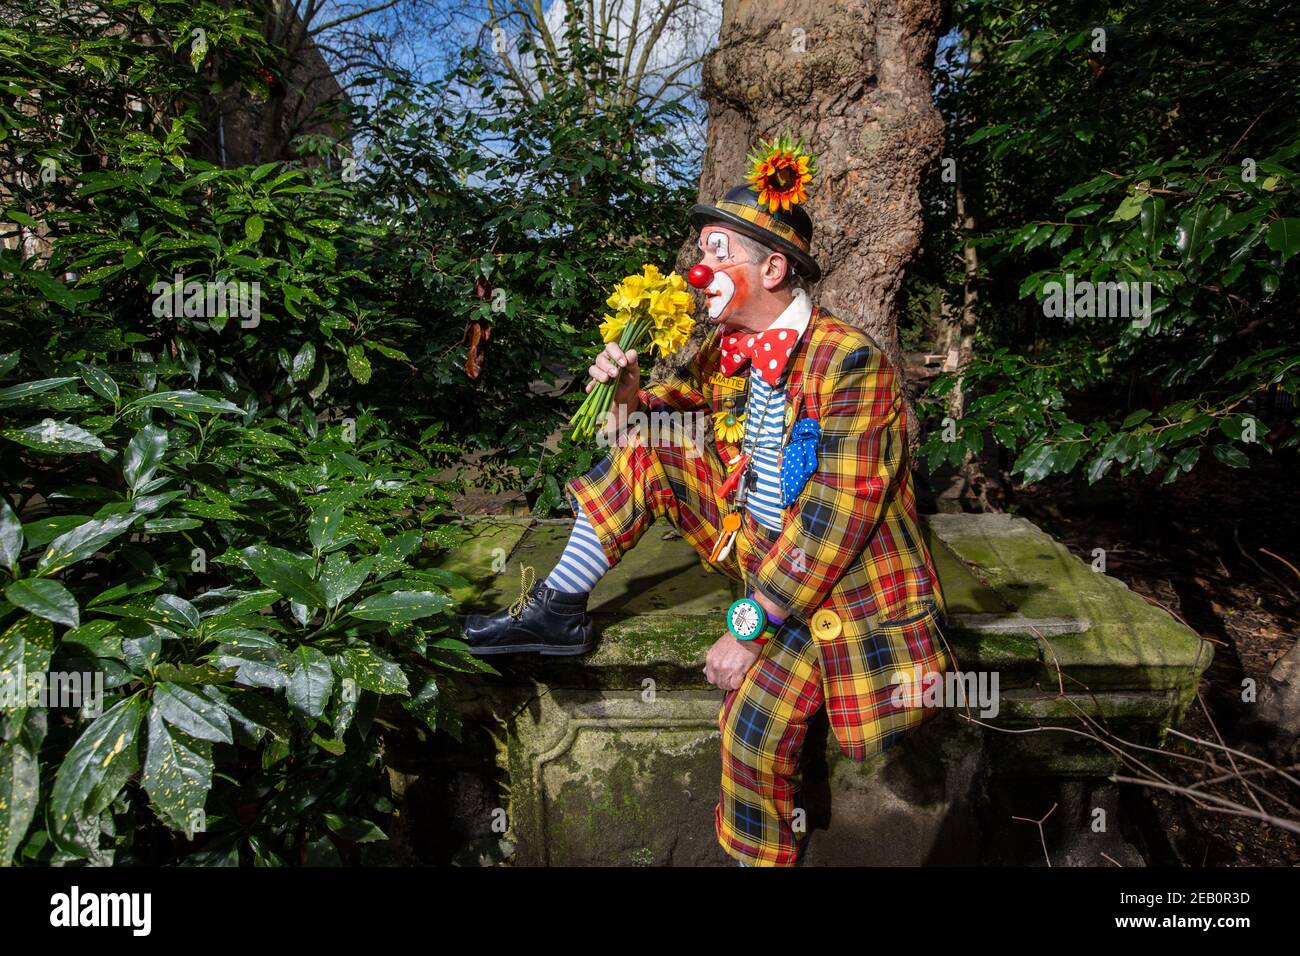 Mattie The Clown of Clowns International si prepara a celebrare il 75° anniversario del servizio Grimaldi Clown domenica 7 febbraio 2021, Londra, Regno Unito. Foto Stock